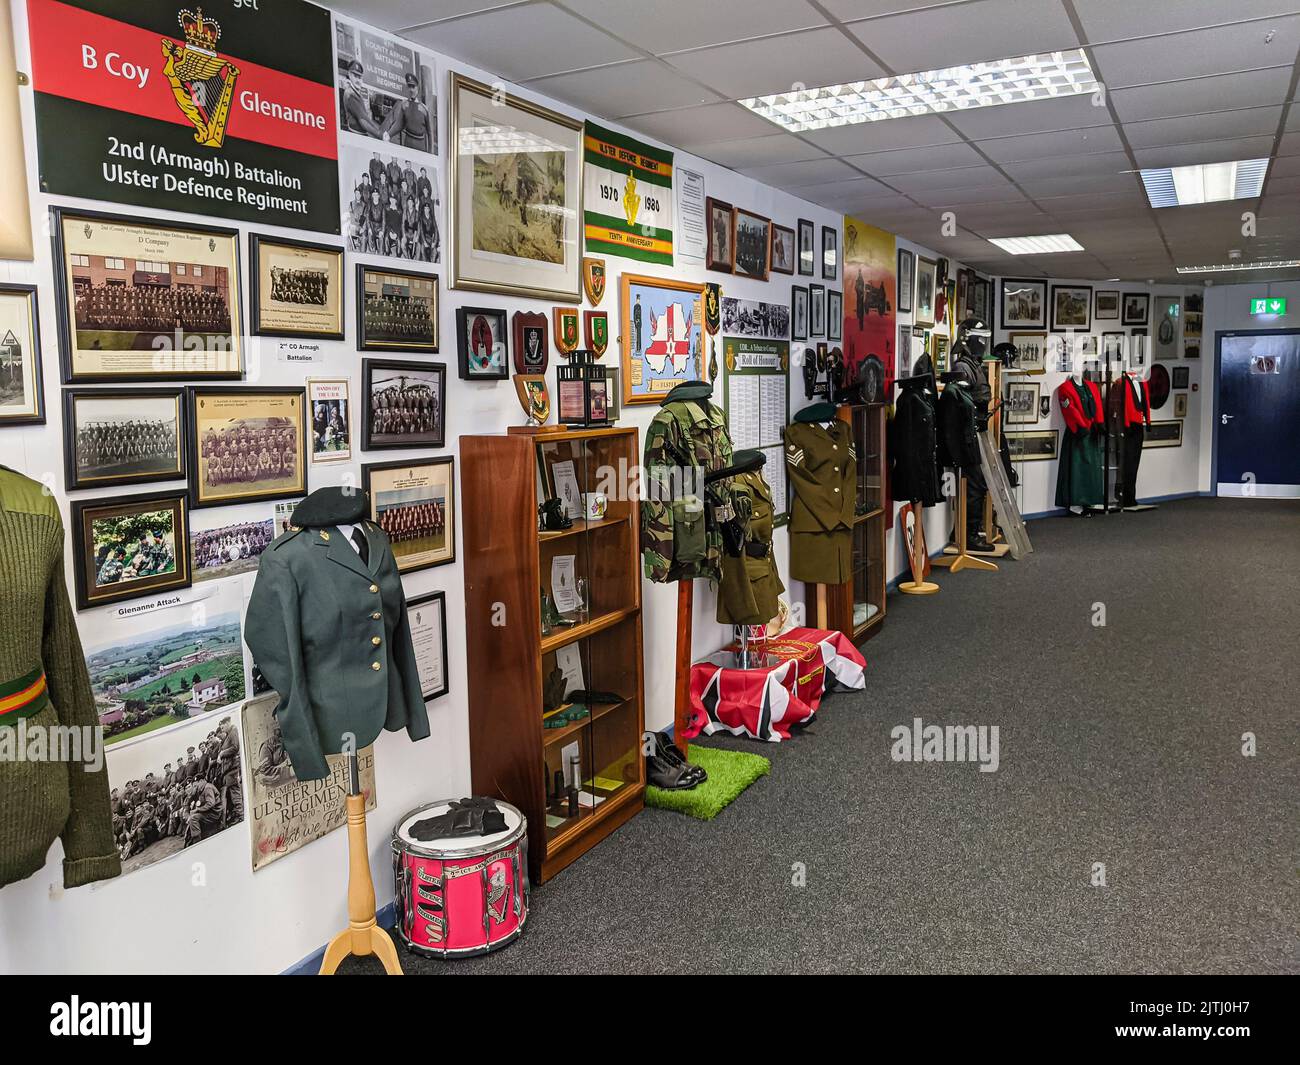 Im Inneren des Militärmuseums Honor Op Banner in Markethill, Nordirland, das eingerichtet wurde, um die Sicherheitsdienste zu ehren, die während der Unruhen in Nordirland dienten. Stockfoto